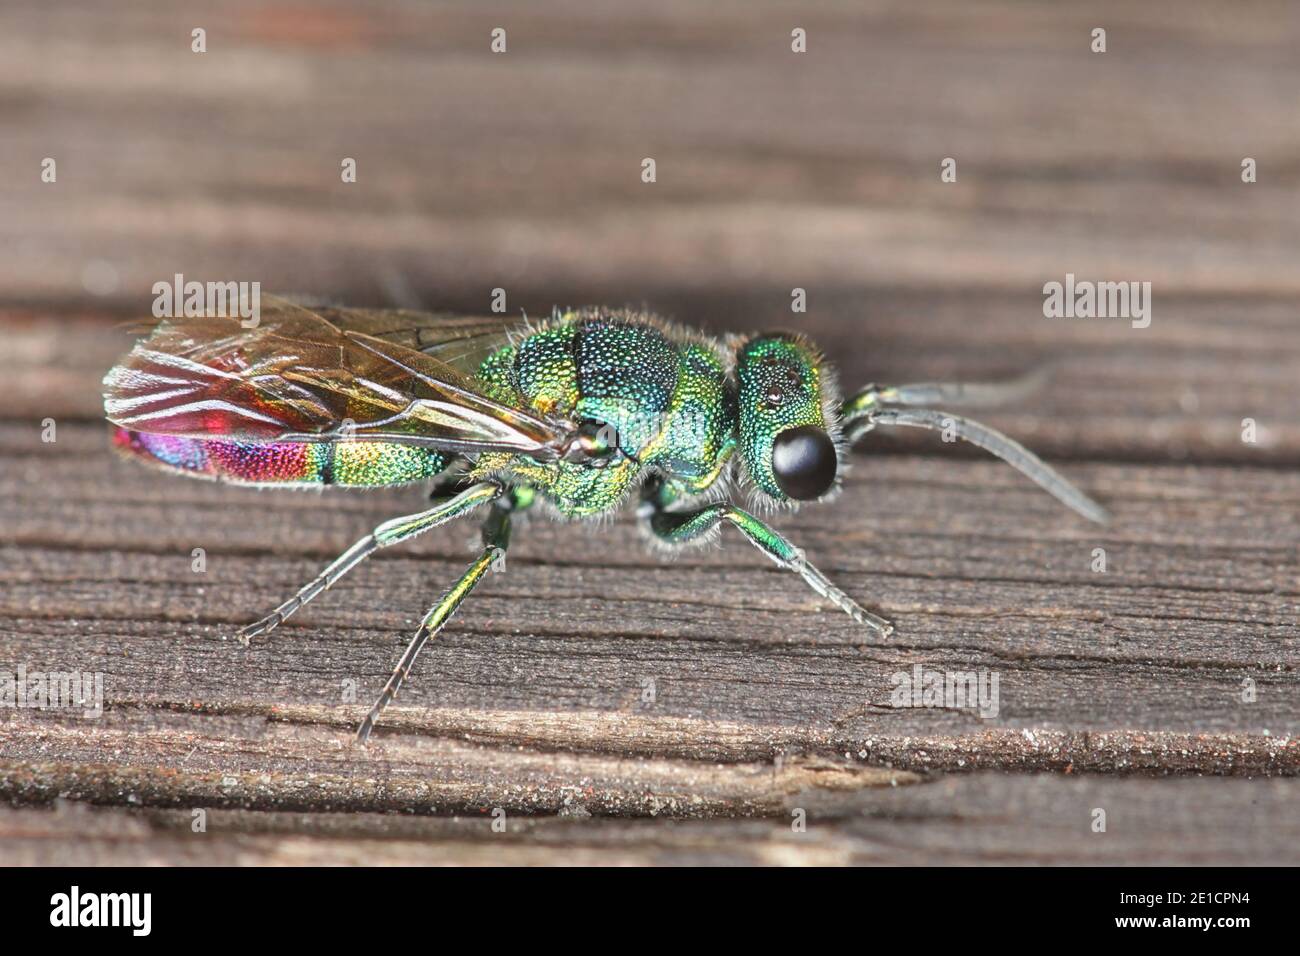 Kuckuckwespe, auch Smaragdwespe genannt, ein buntes Insekt der hymenopteranischen Familie Chrysididae Stockfoto